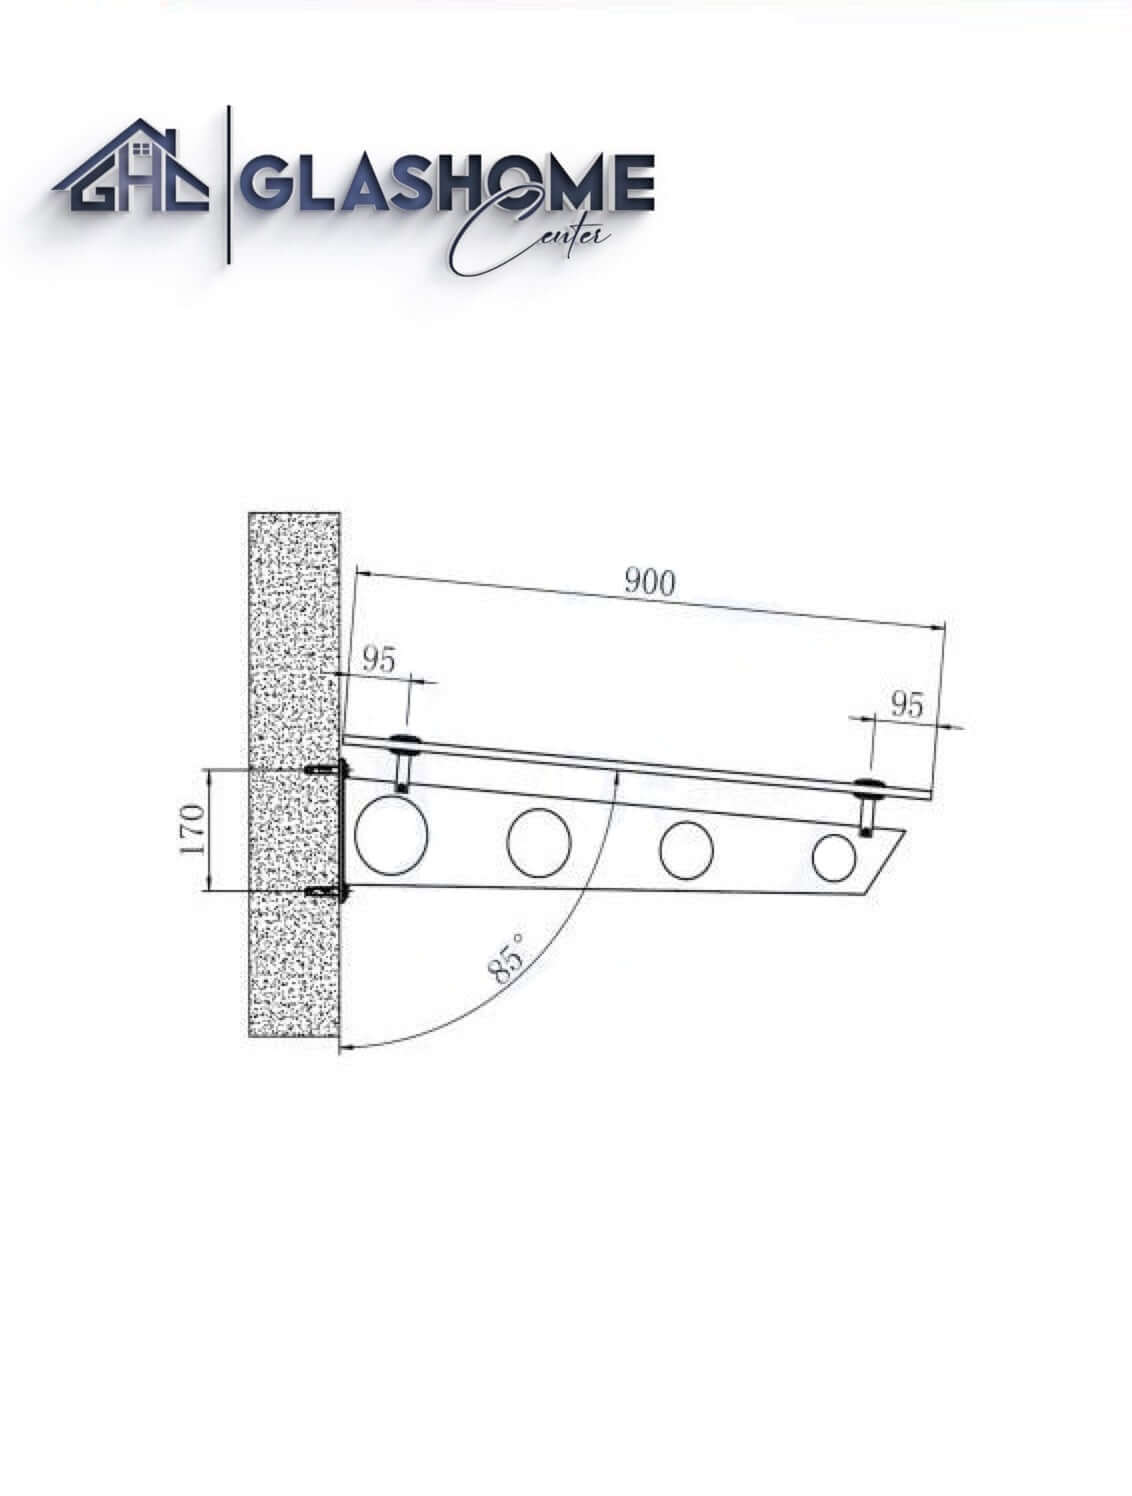 GlasHomeCenter - baldacchino in vetro - vetro trasparente - 170x90 cm - vetro di sicurezza stratificato 13,1 mm - incl.2 staffe in acciaio inox nero variante "Stoccolma"